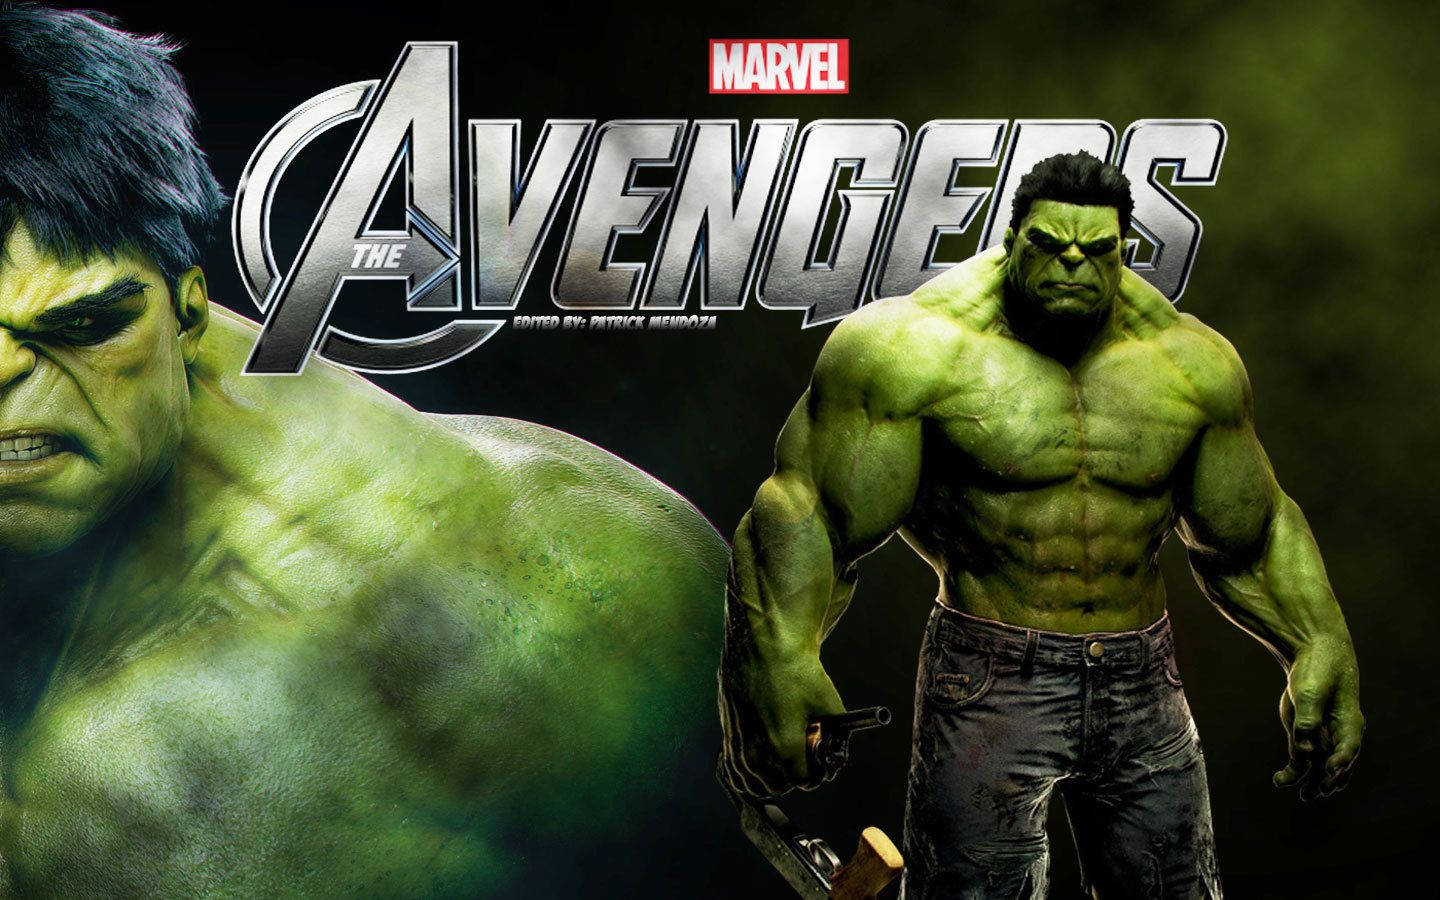 Marvel The Hulk Avengers